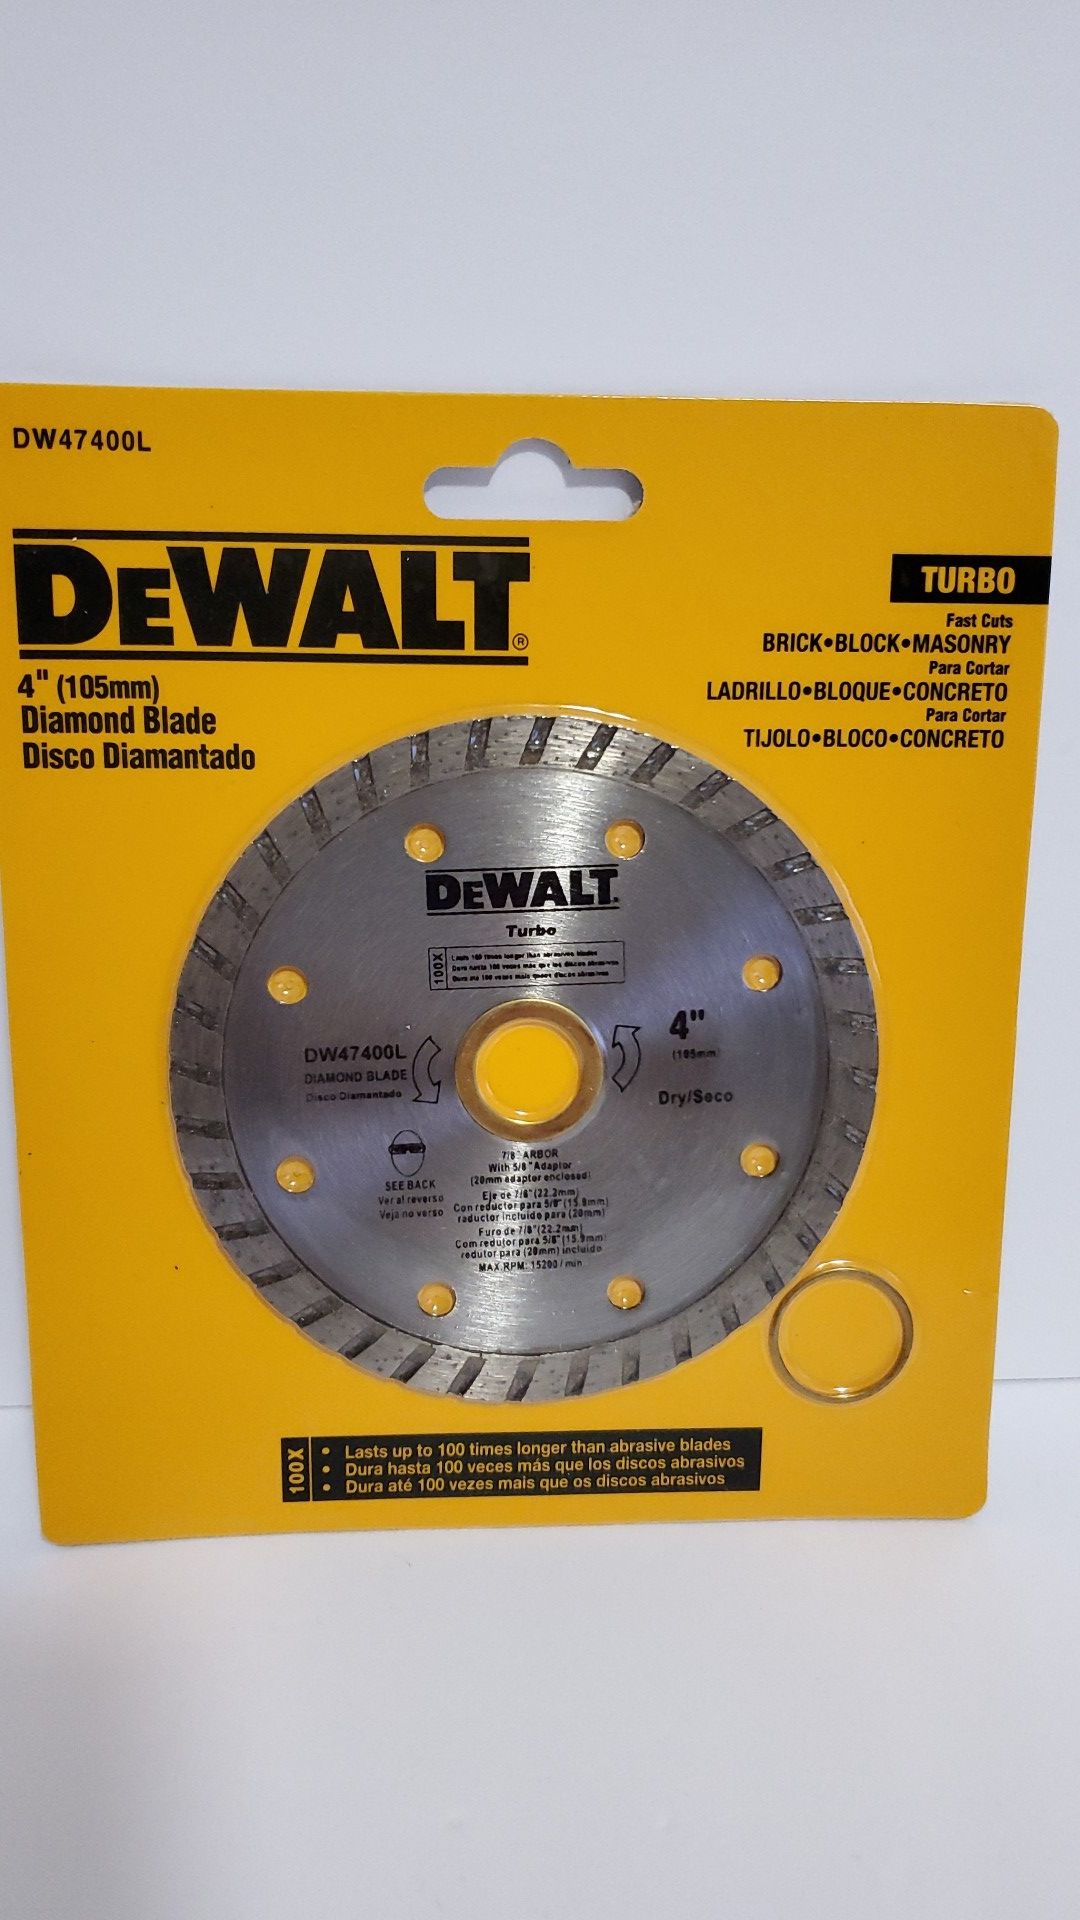 Dewalt Dw47400L TURBO DIAMOND BLADE NEW